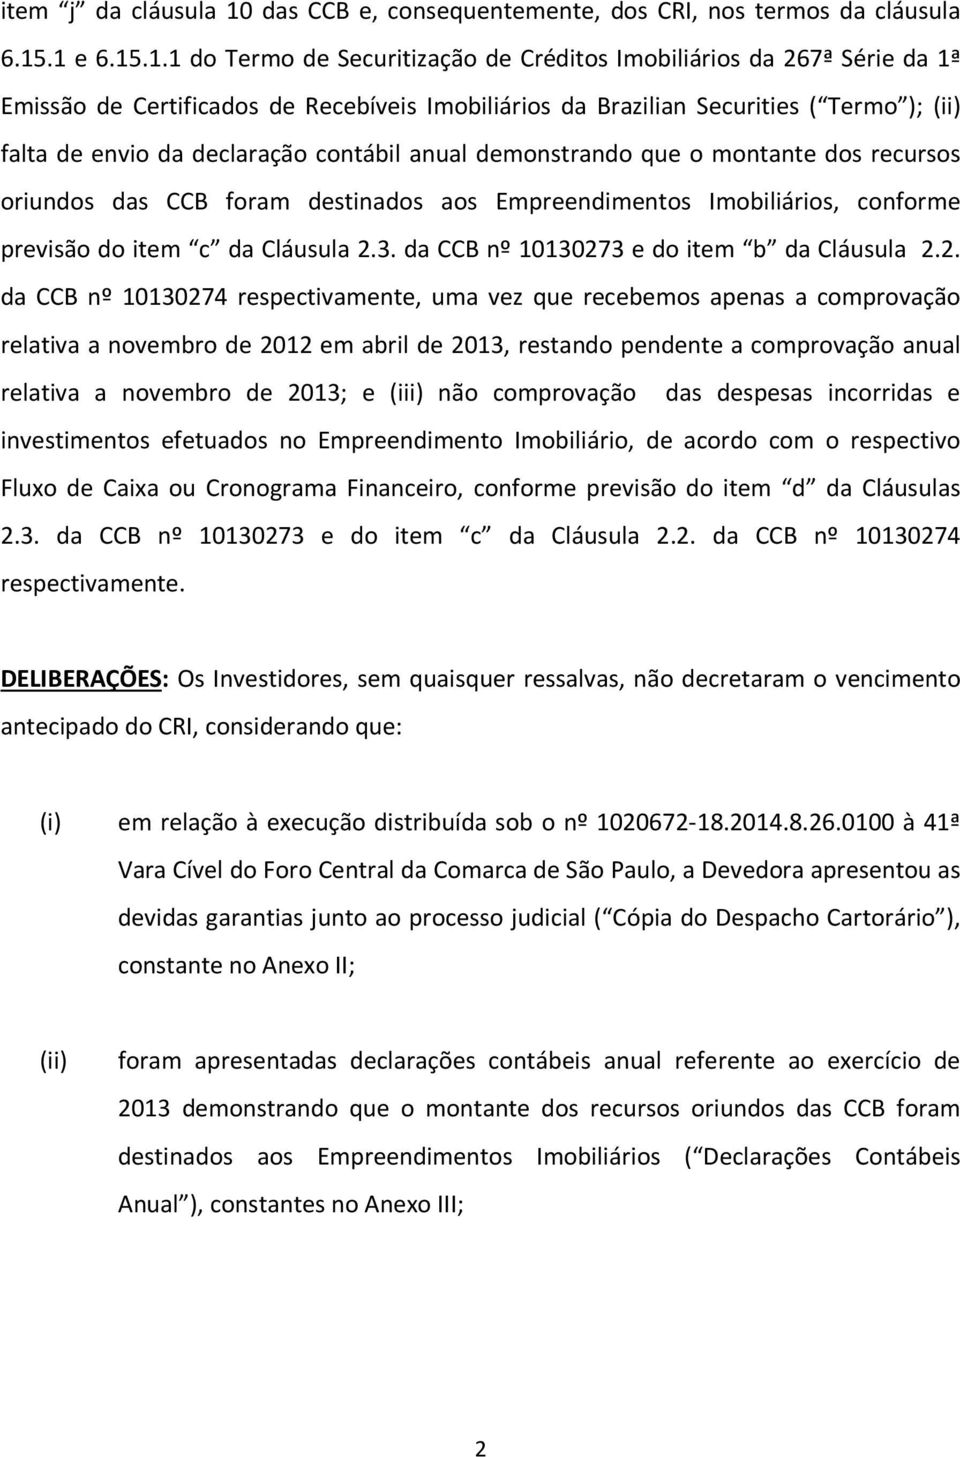 .1 e 6.15.1.1 do Termo de Securitização de Créditos Imobiliários da 267ª Série da 1ª Emissão de Certificados de Recebíveis Imobiliários da Brazilian Securities ( Termo ); (ii) falta de envio da